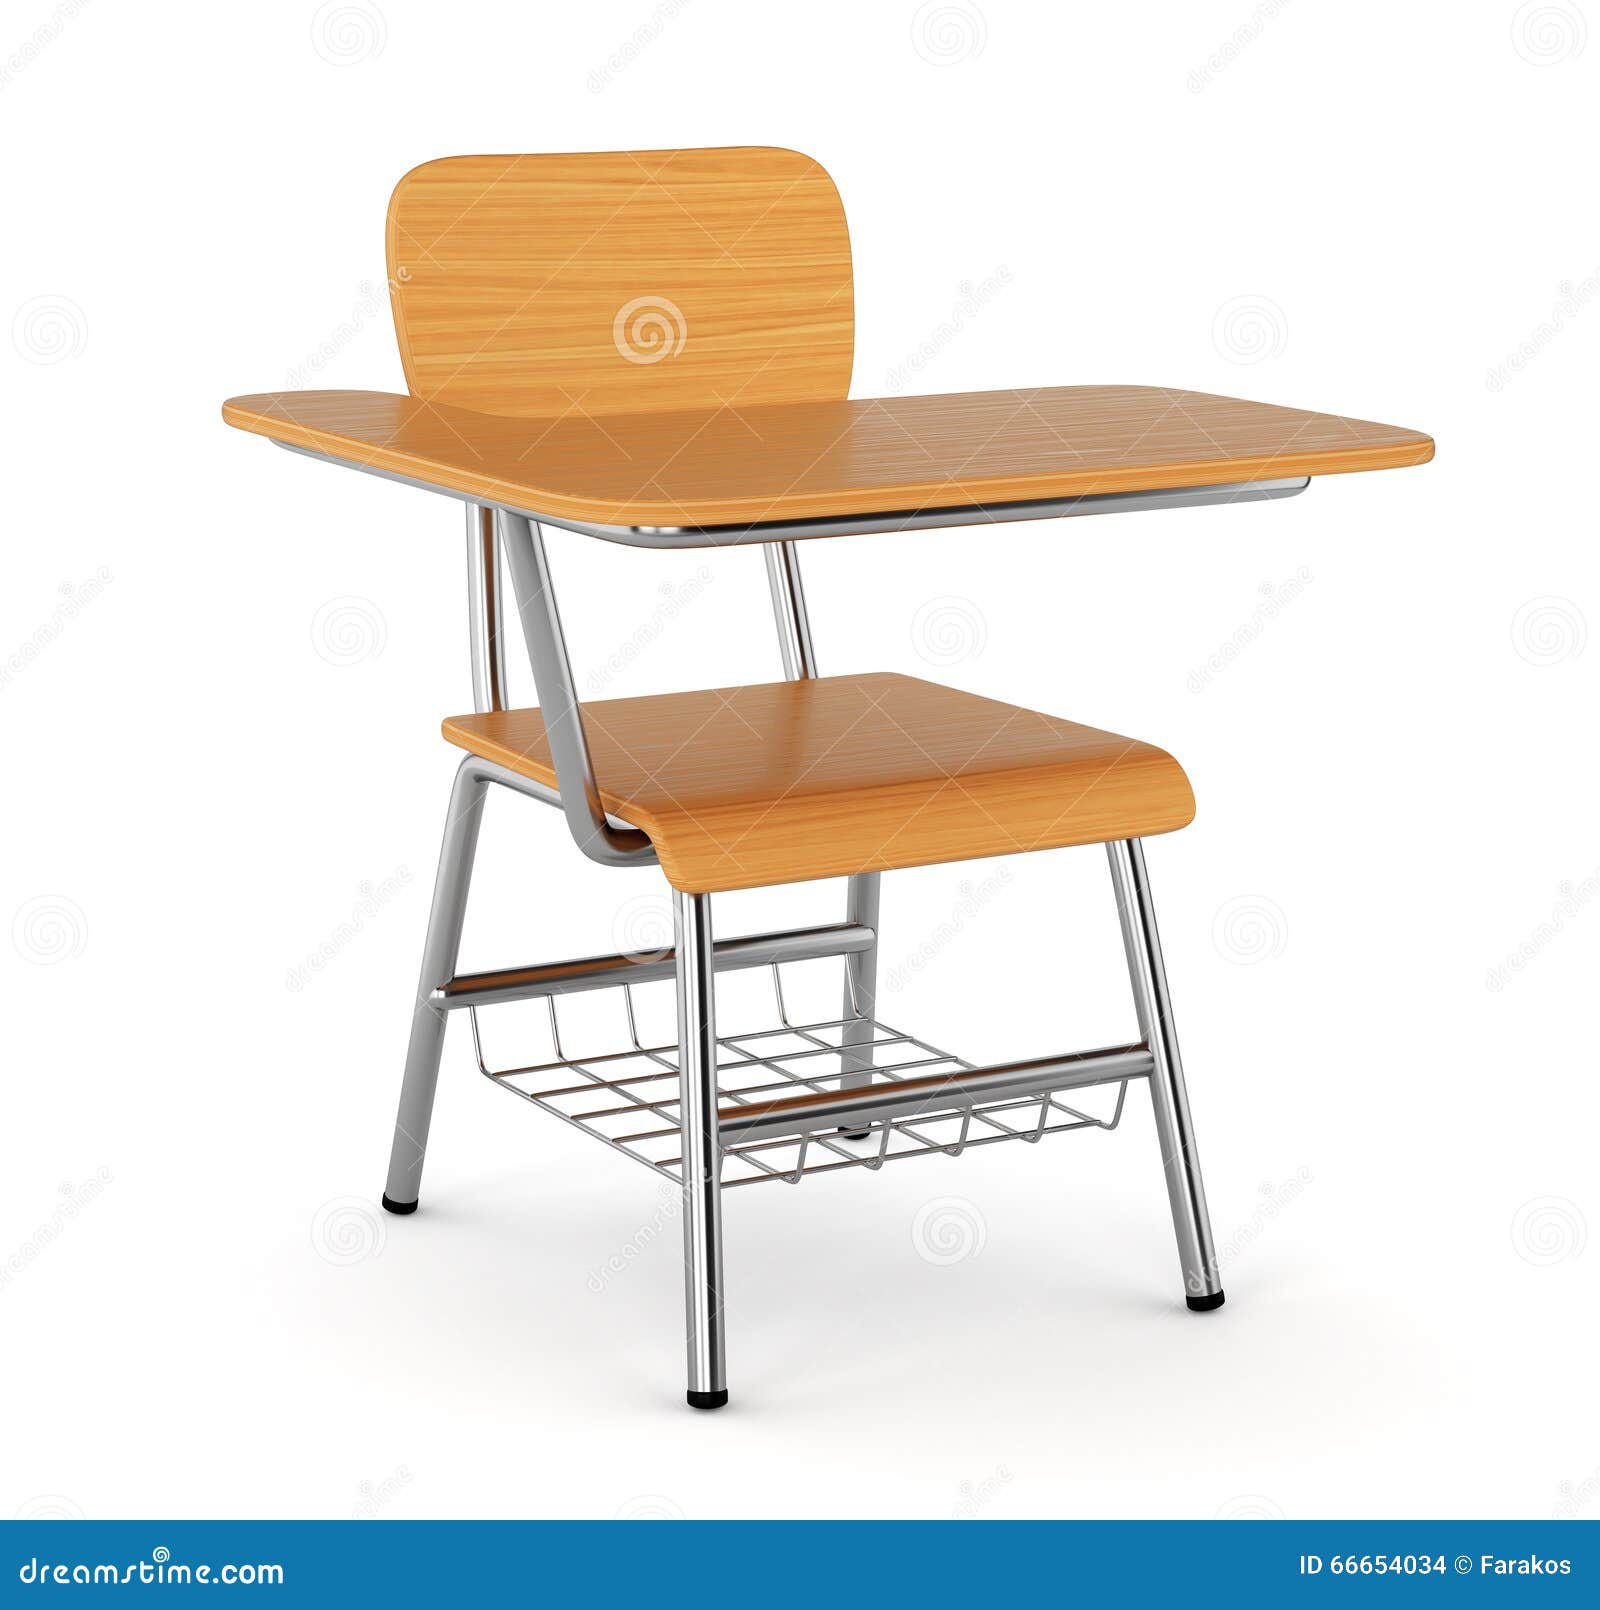 wood school desk